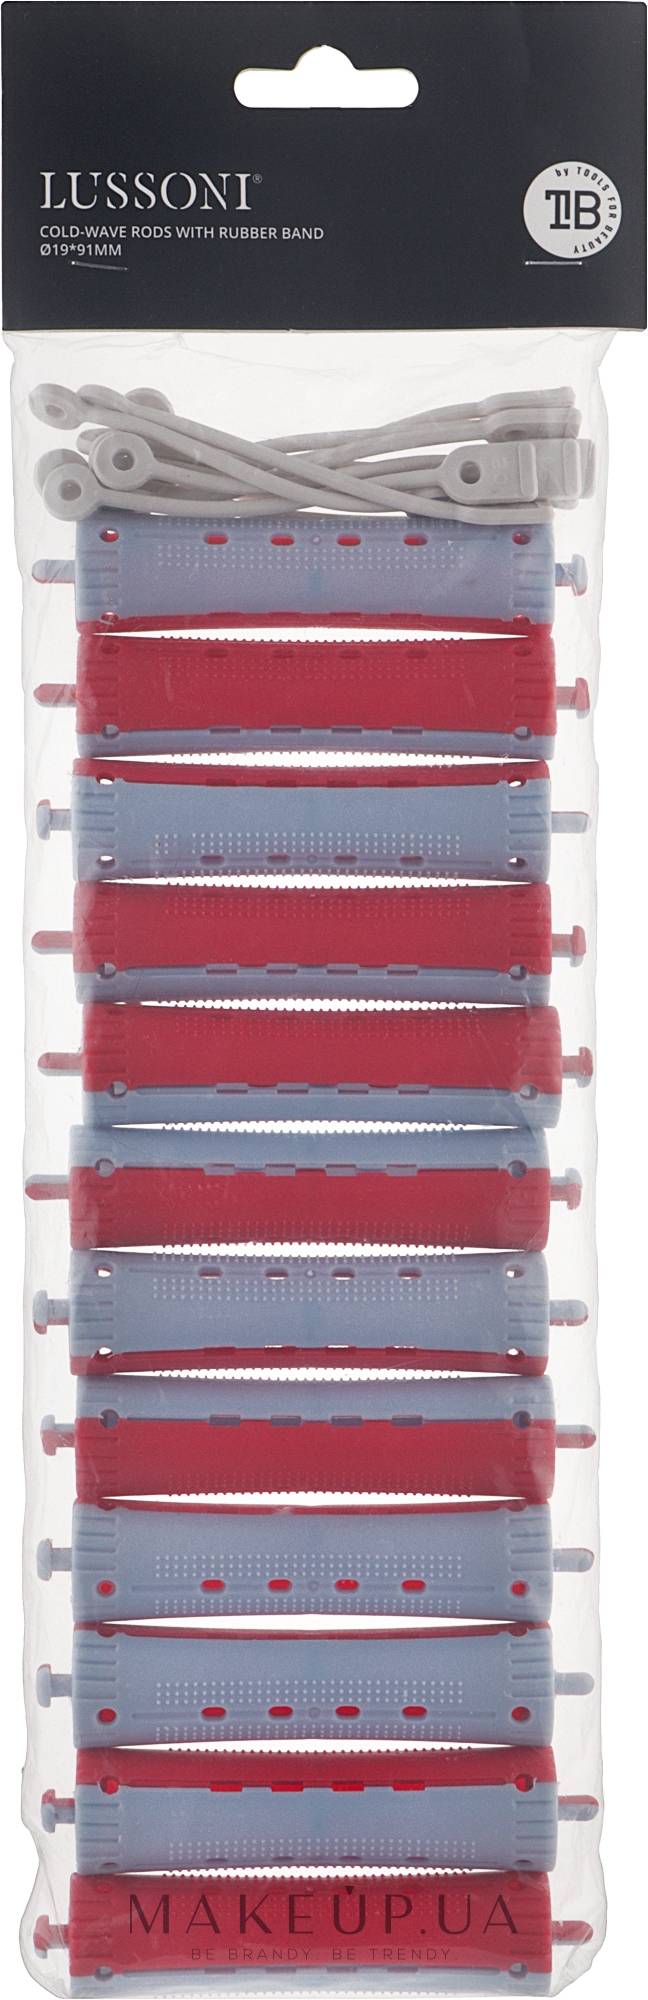 Бигуди для волос O19x91 мм, красно-голубые - Lussoni Cold-Wave Rods With Rubber Band — фото 12шт